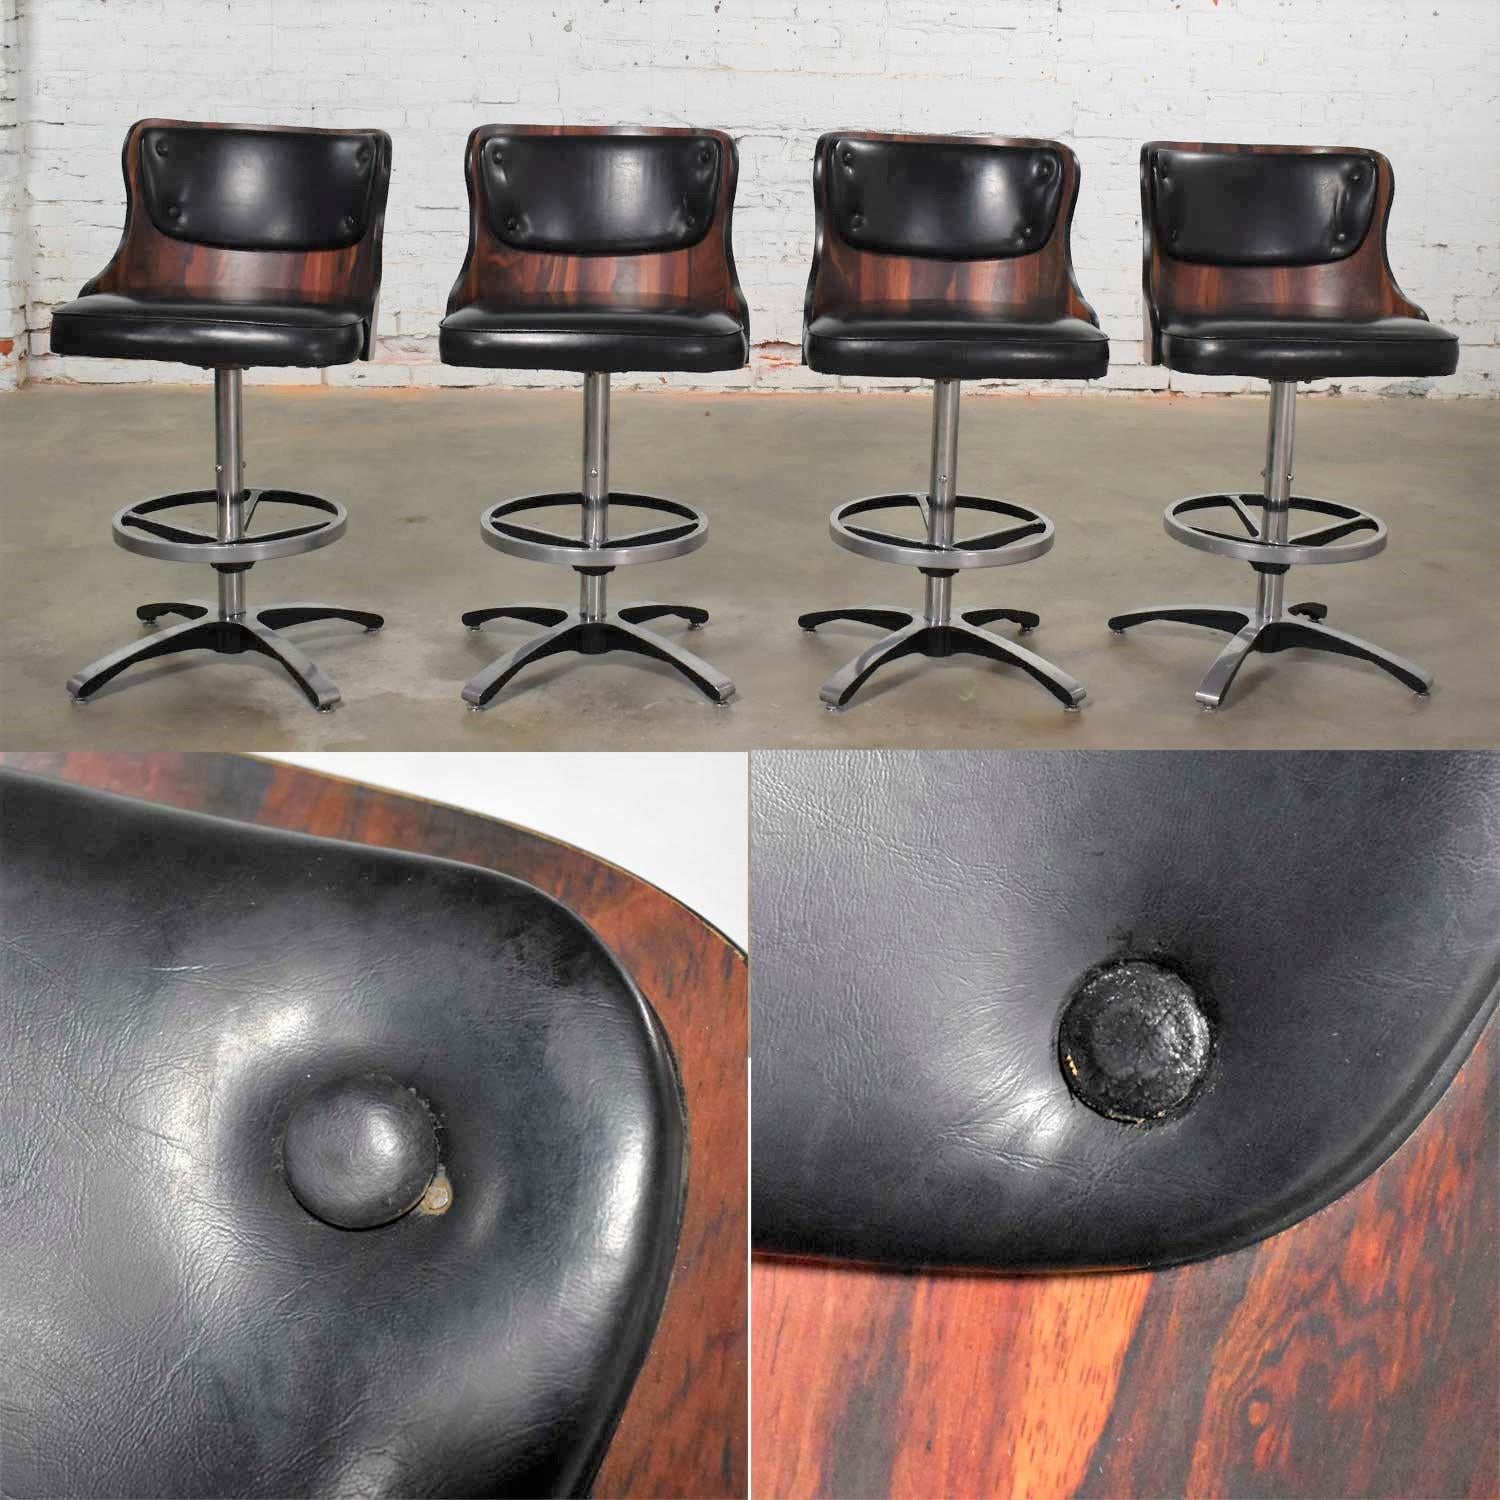 Vintage Modern Daystrom Adjustable Black Bar Stools Molded Curved Backs Set 4 5